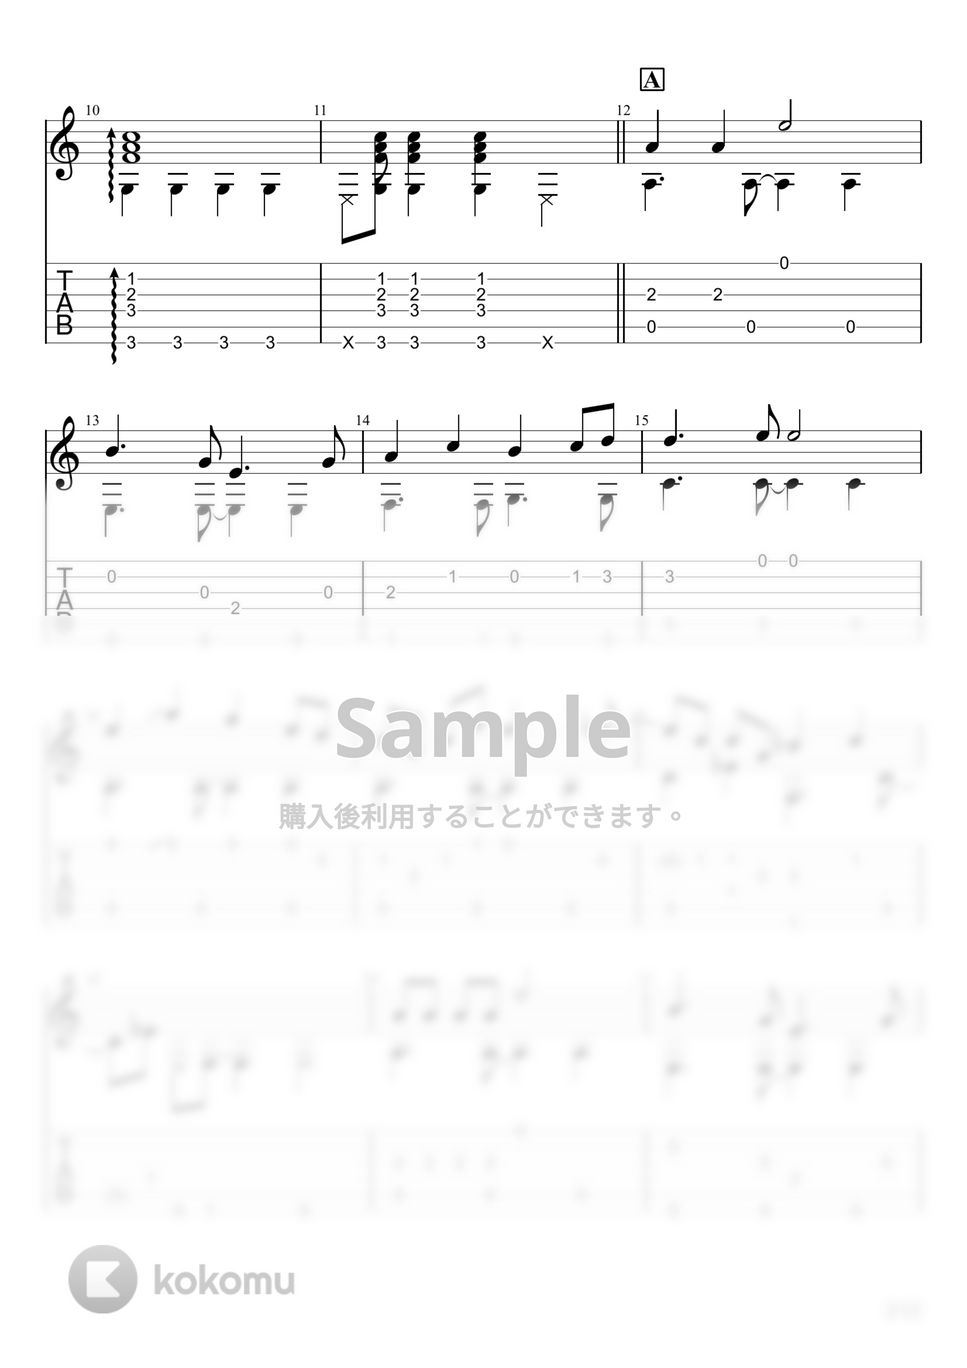 中島愛 - 星間飛行 (ソロギター) by u3danchou